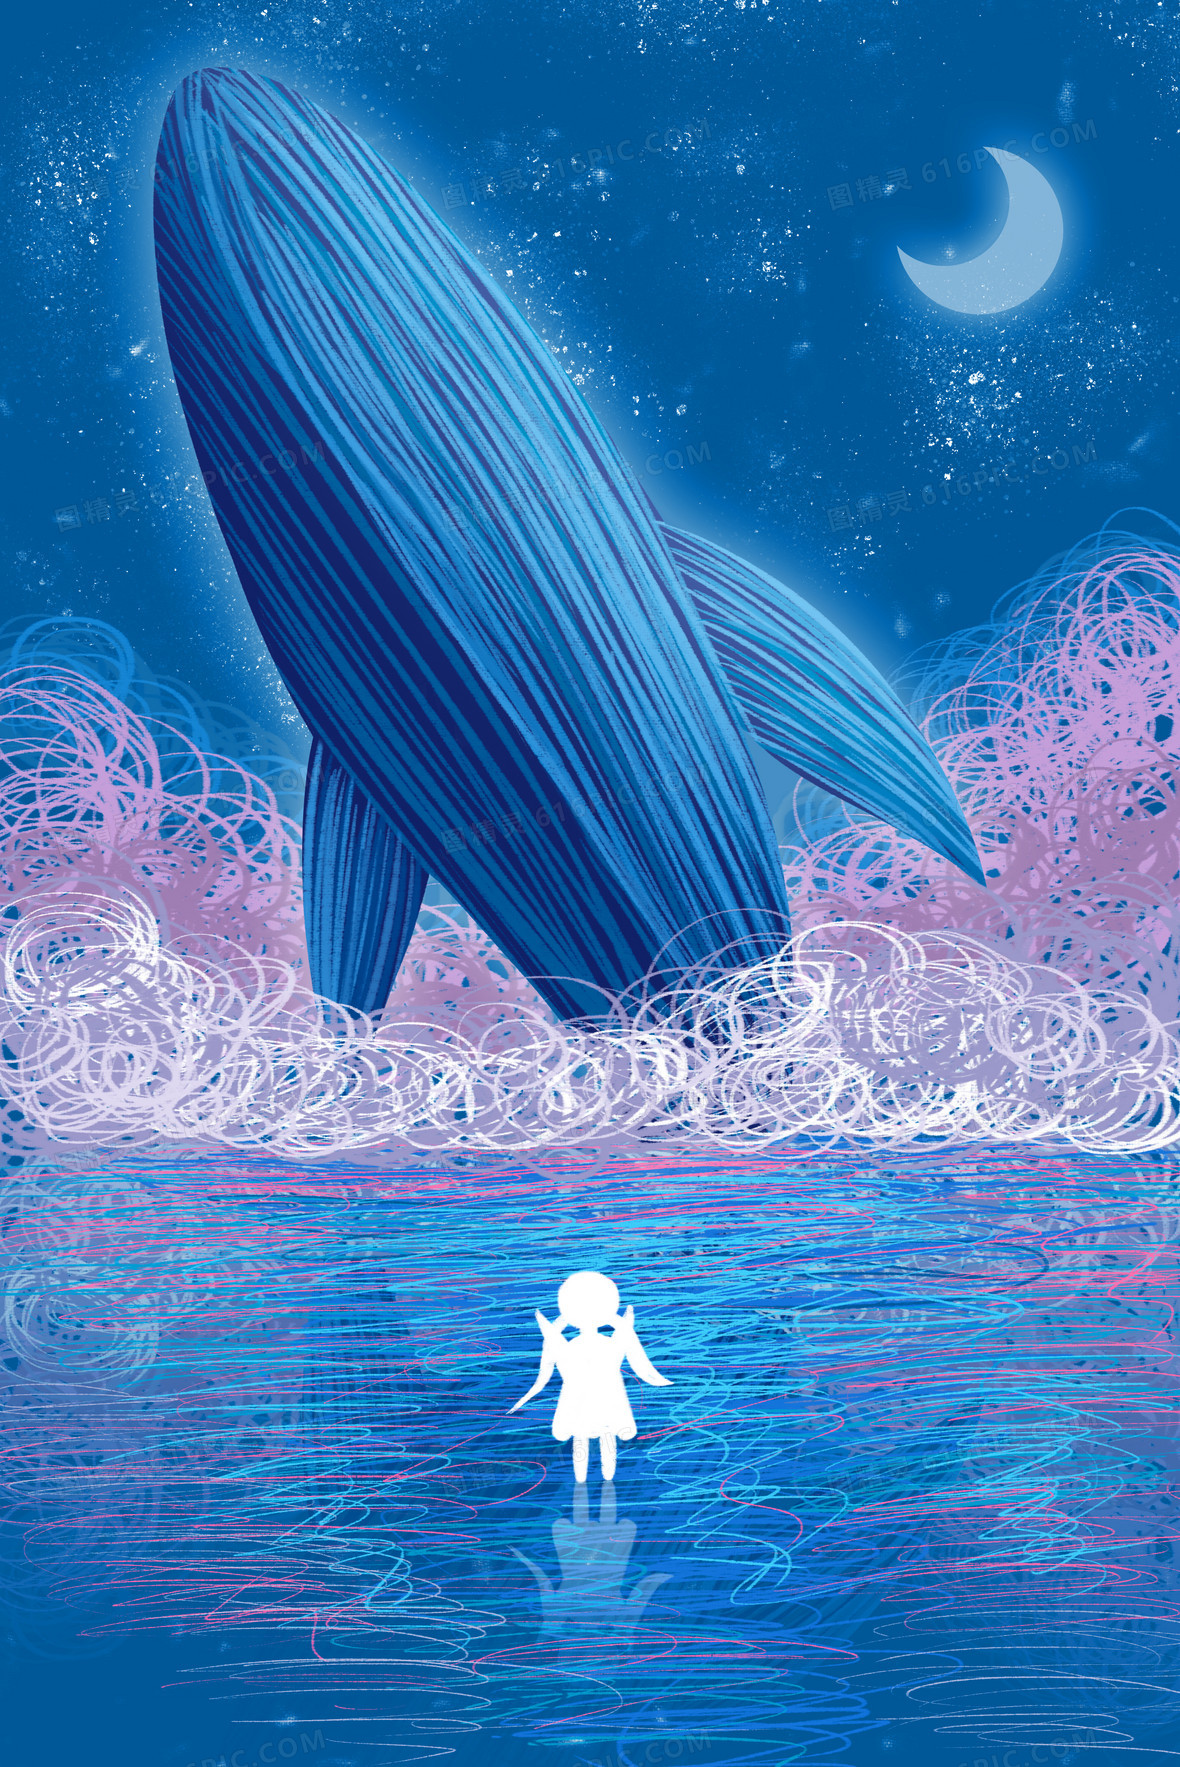 森系文艺手绘插画鲸鱼图片